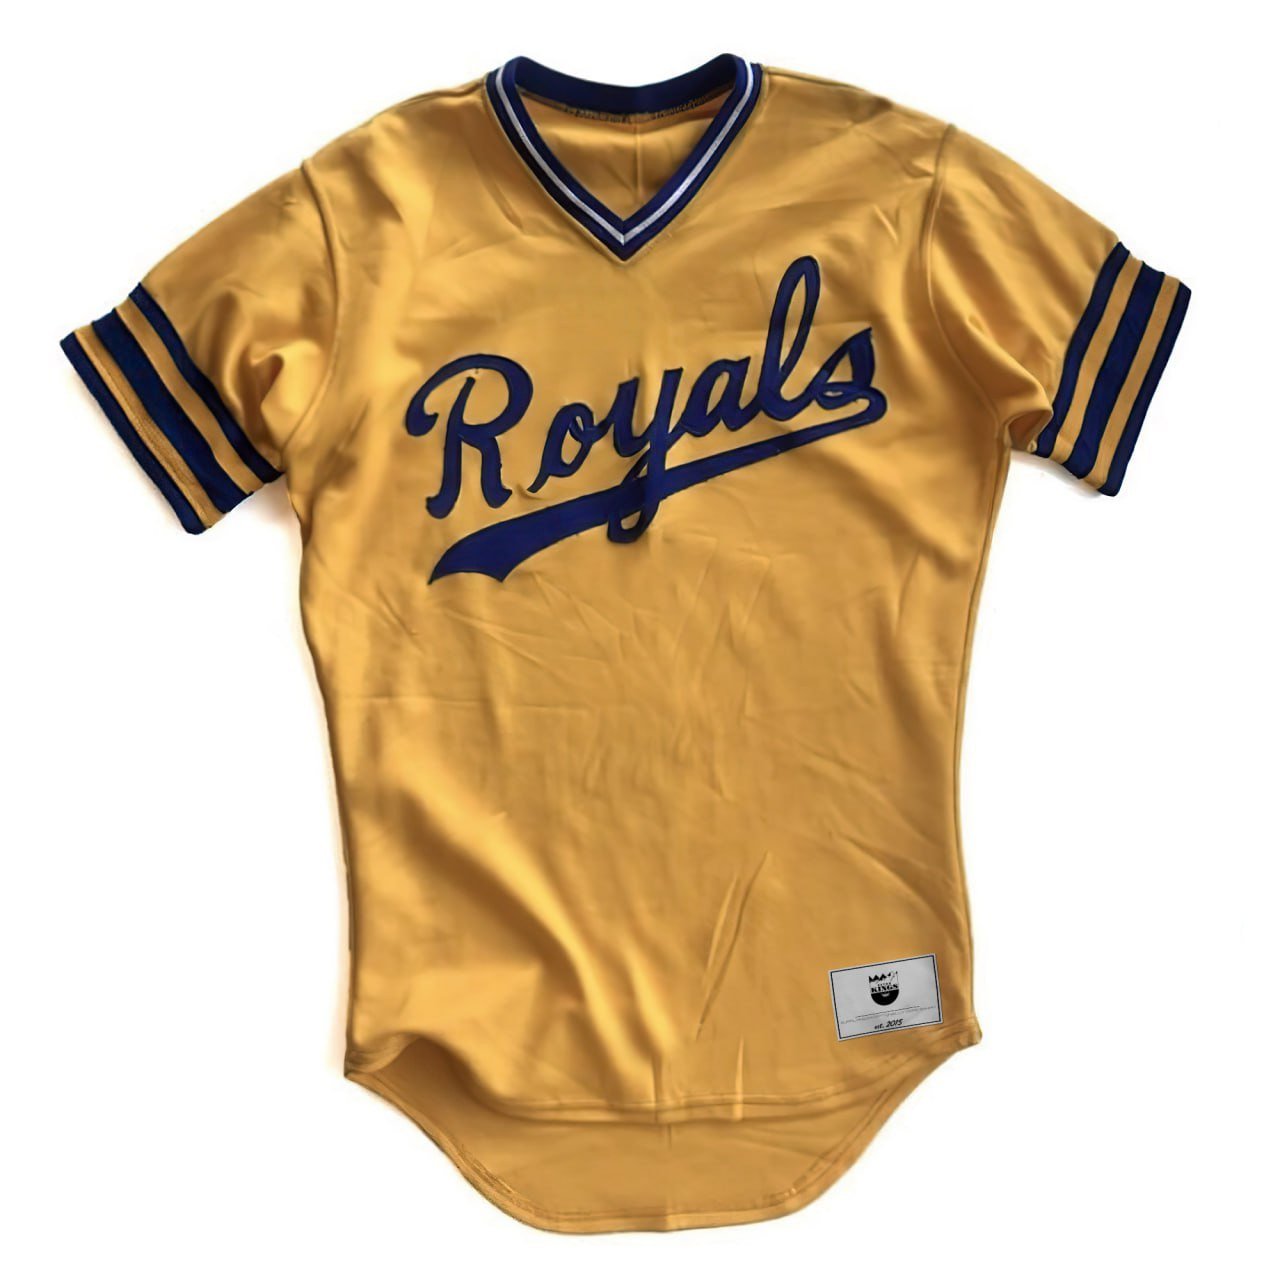 royals vintage jersey